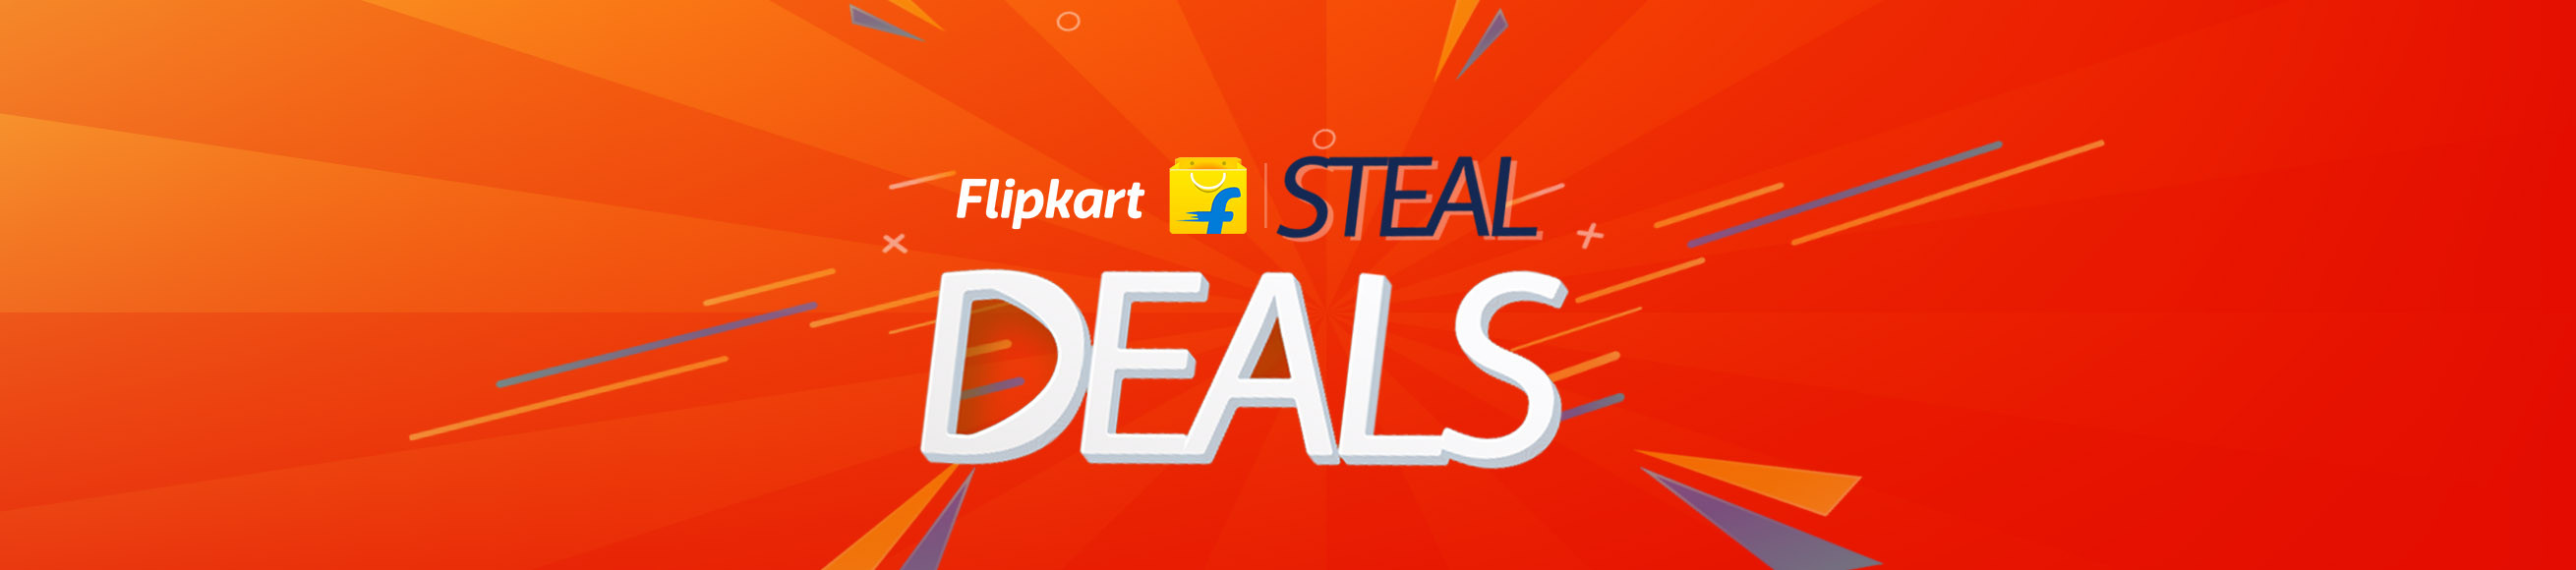 Flipkart Fabulous Deals